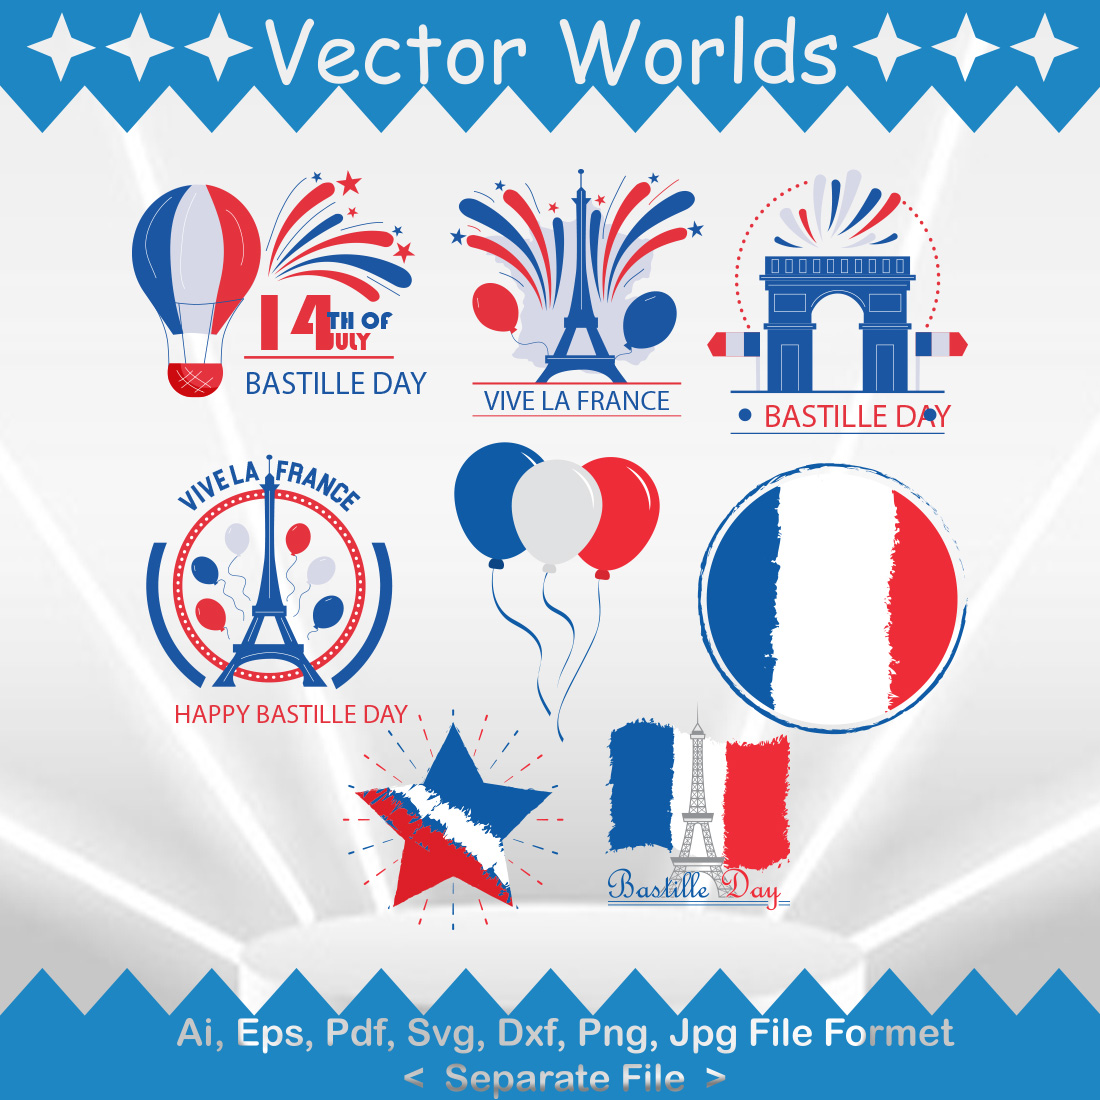 Bastille Day SVG Vector Design preview image.